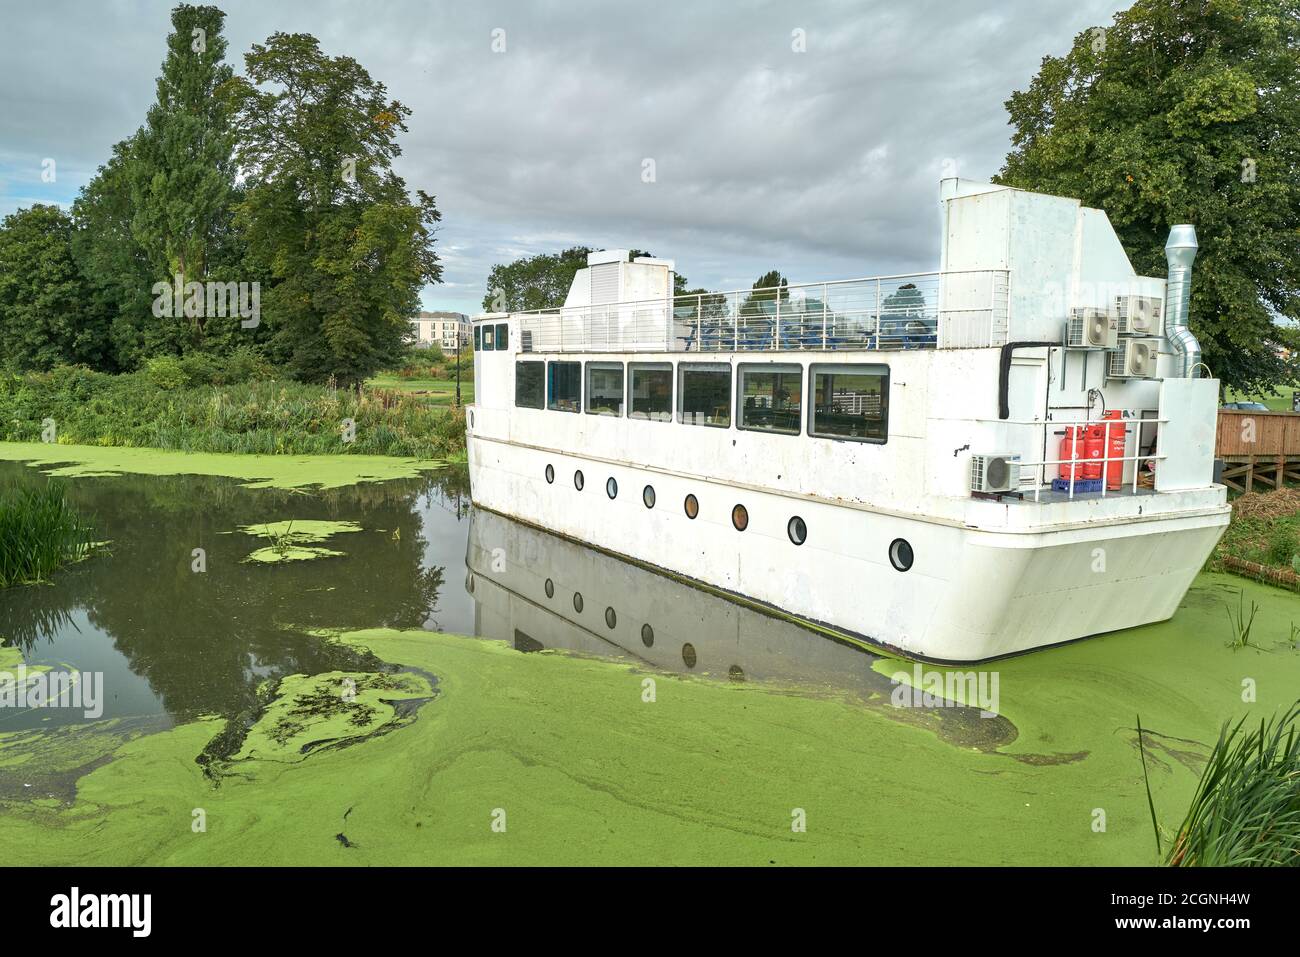 Il battello ristorante galleggiante 'Ark' sul fiume Nene a Midsummer Meadow, Northampton, Inghilterra, chiuso a causa della crisi del coronavirus, agosto 2020. Foto Stock